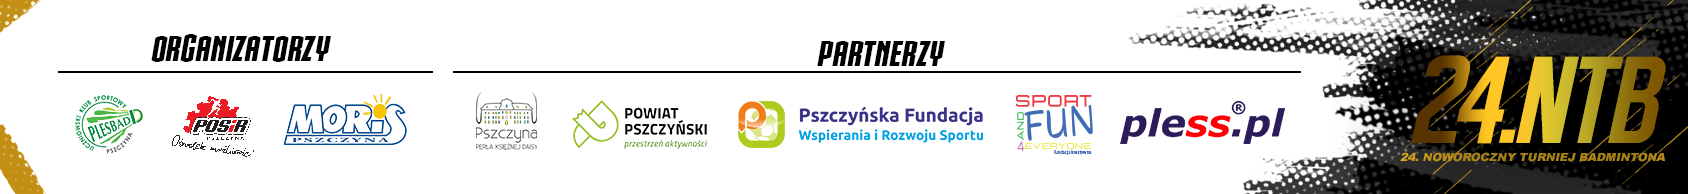 Logotypy organizatorów i partnerów 24. Noworoczny Turniej Badmintona